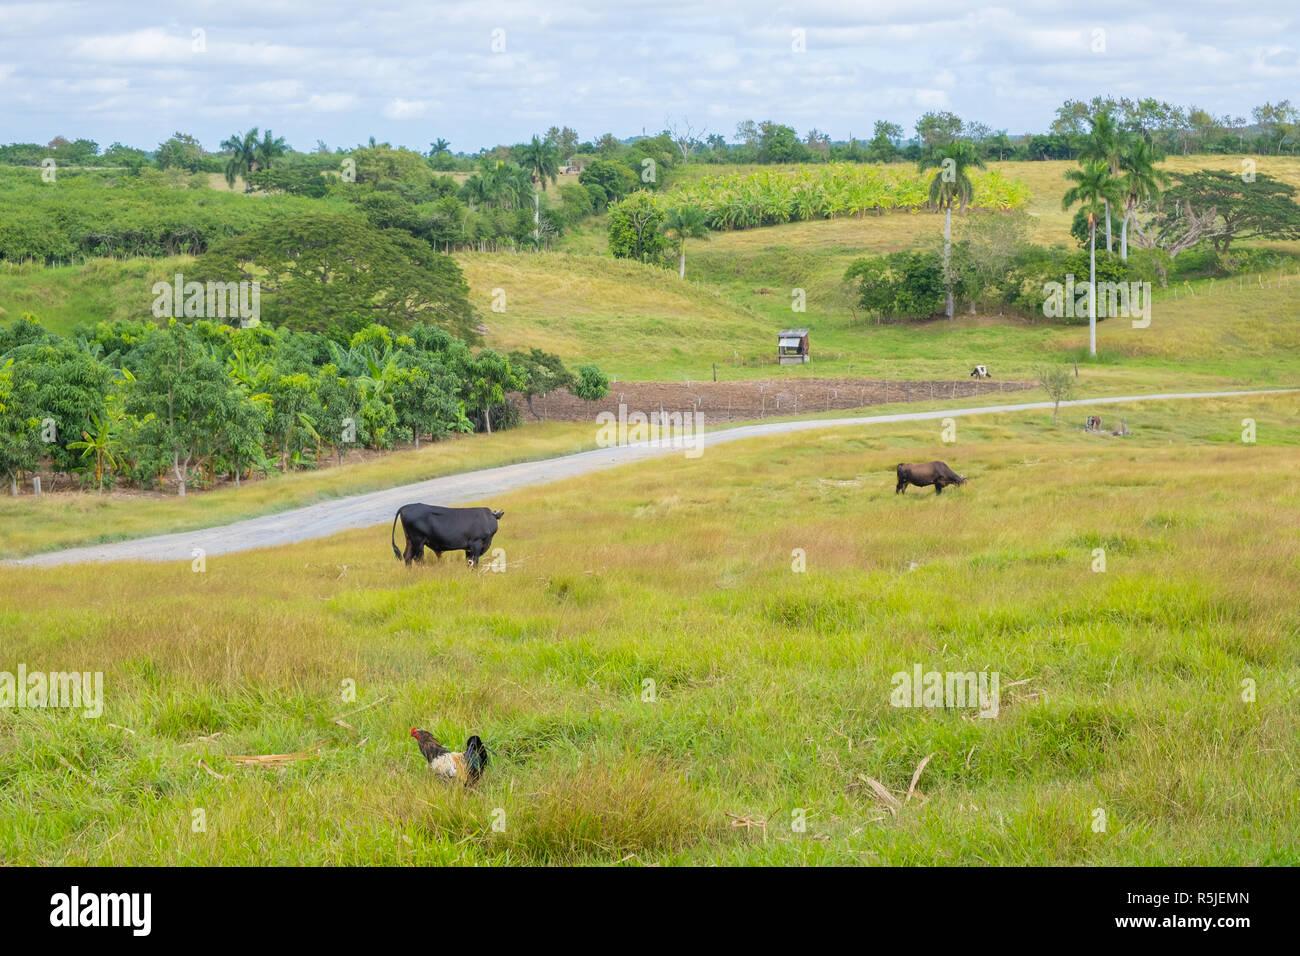 Piccola fattoria o finca fotografato nelle zone rurali a Cuba. Foto Stock